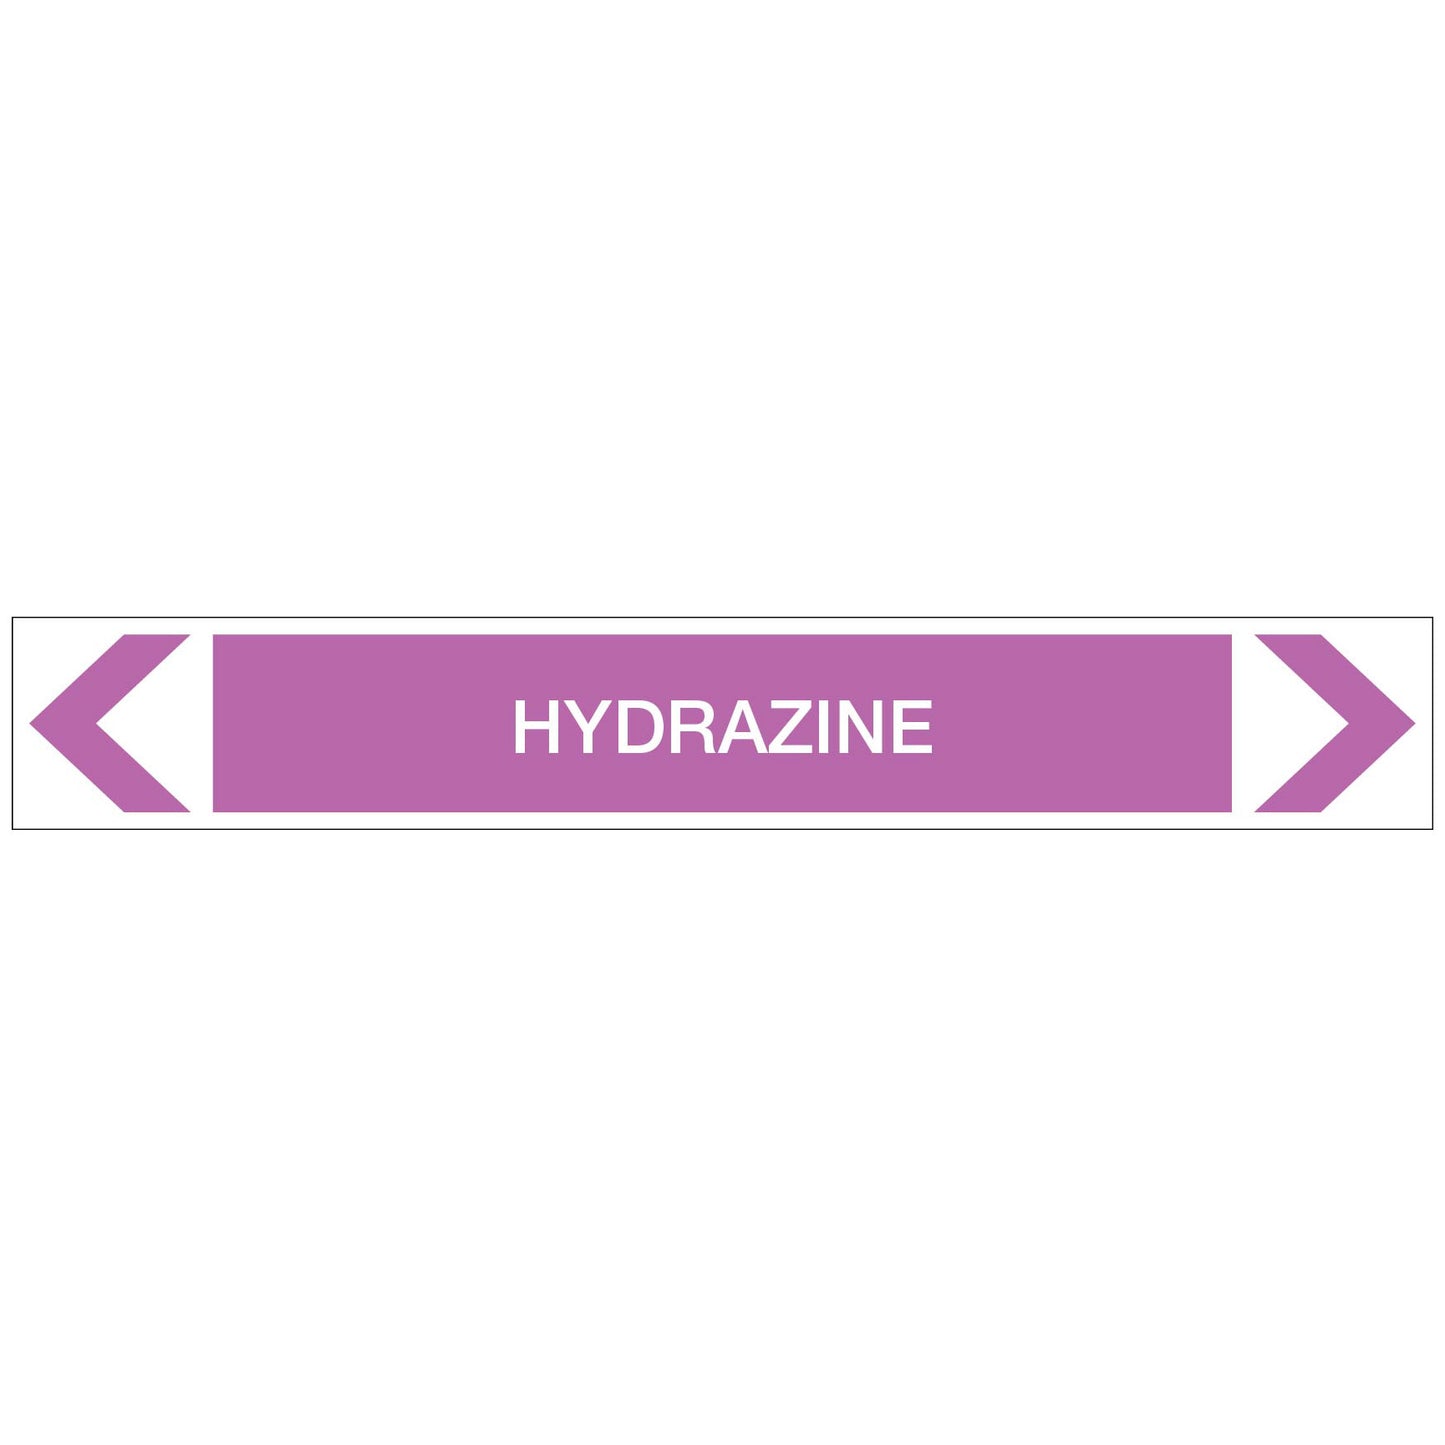 Alkalis / Acids - Hydrazine - Pipe Marker Sticker